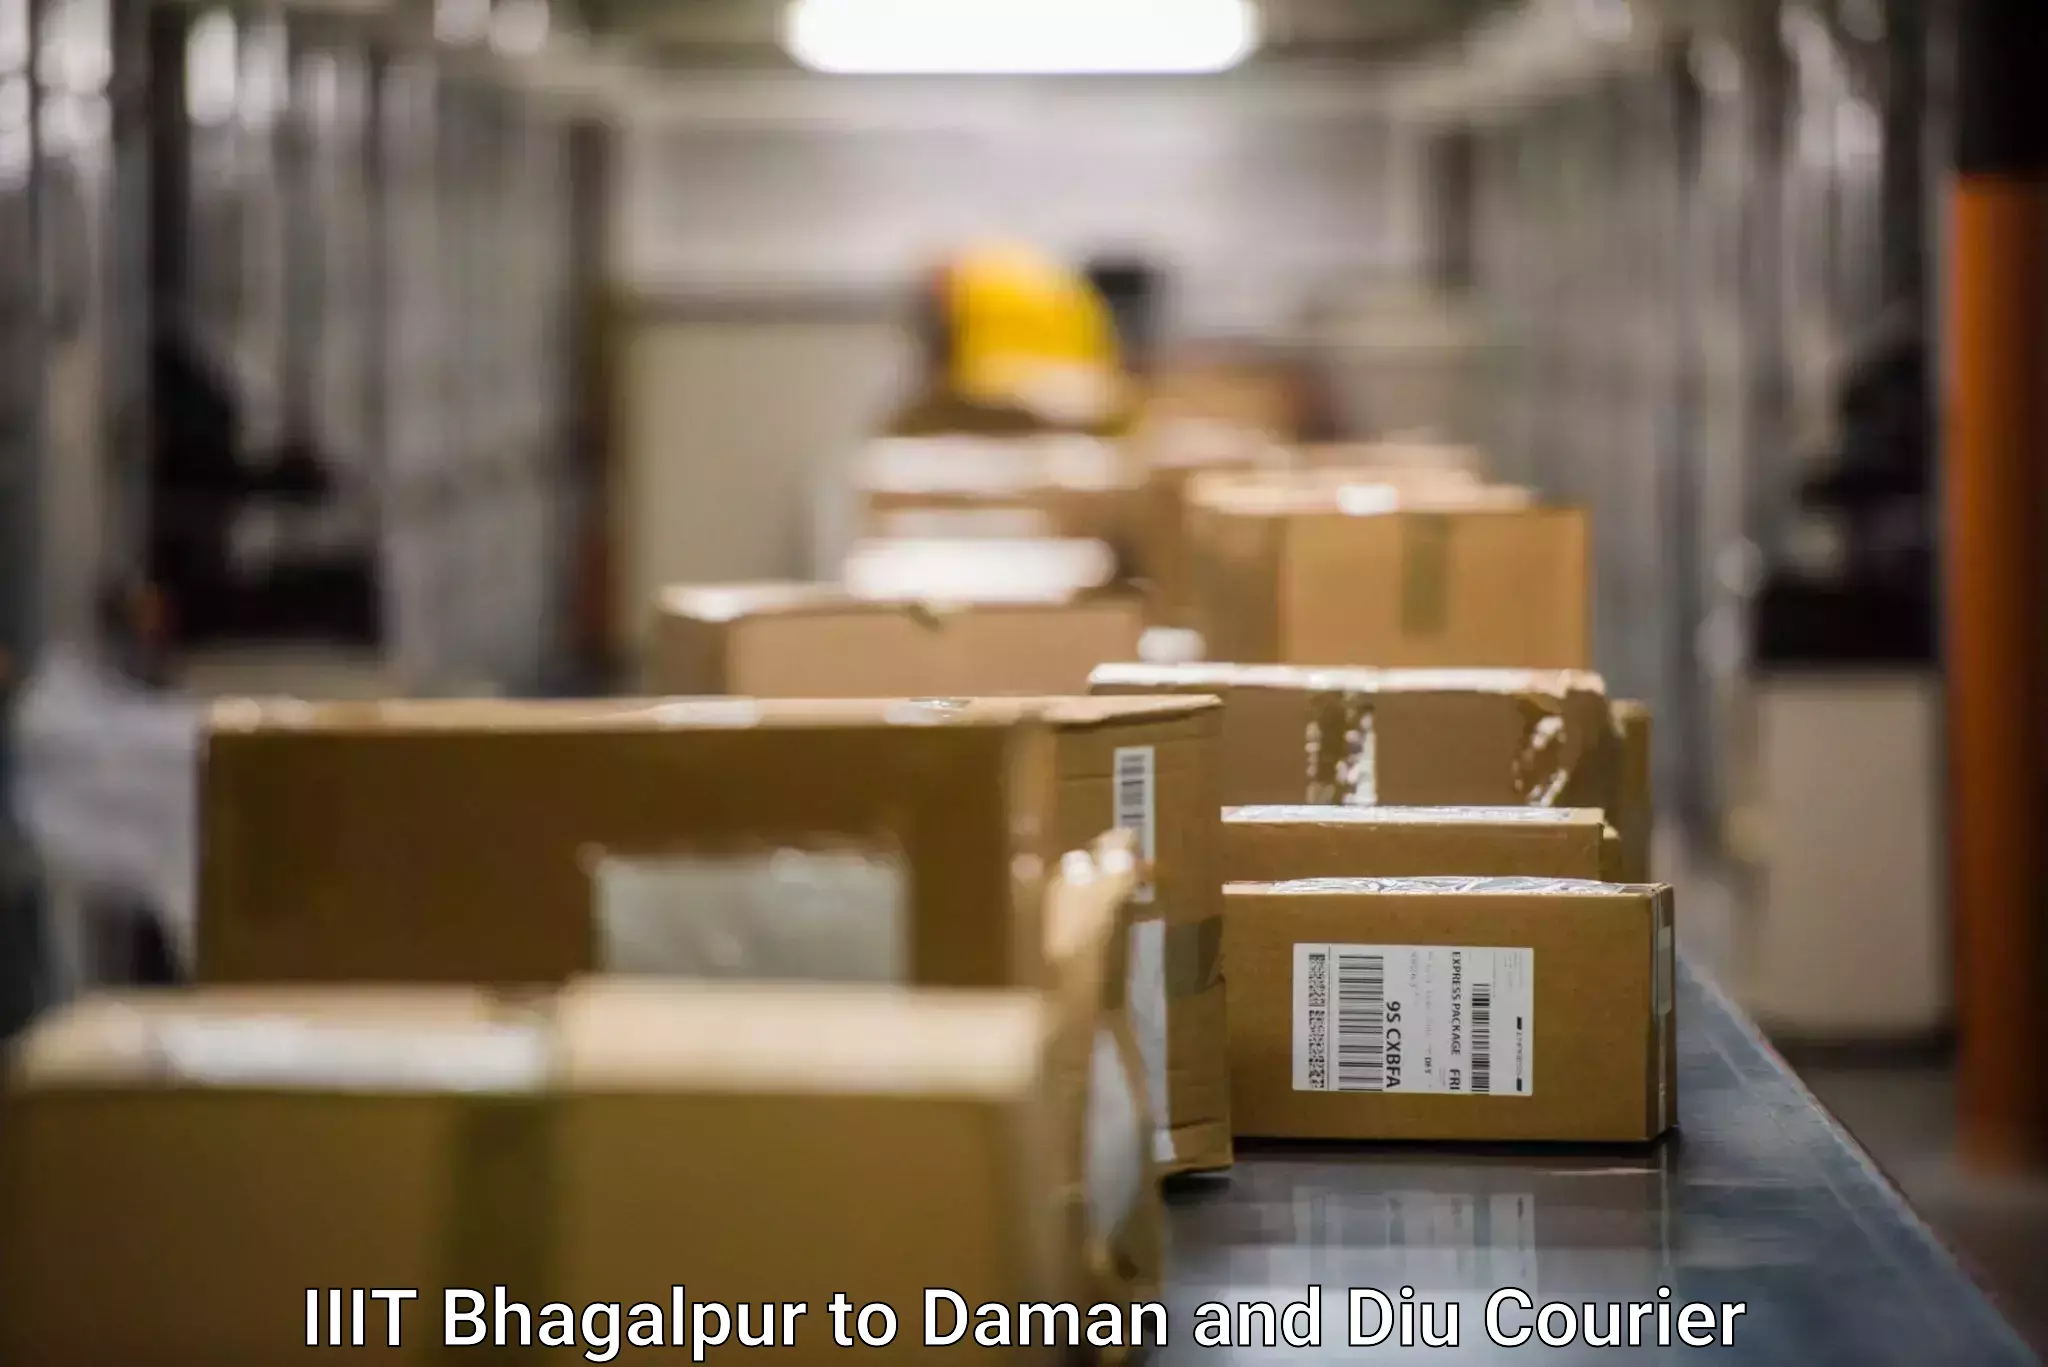 Premium delivery services IIIT Bhagalpur to Daman